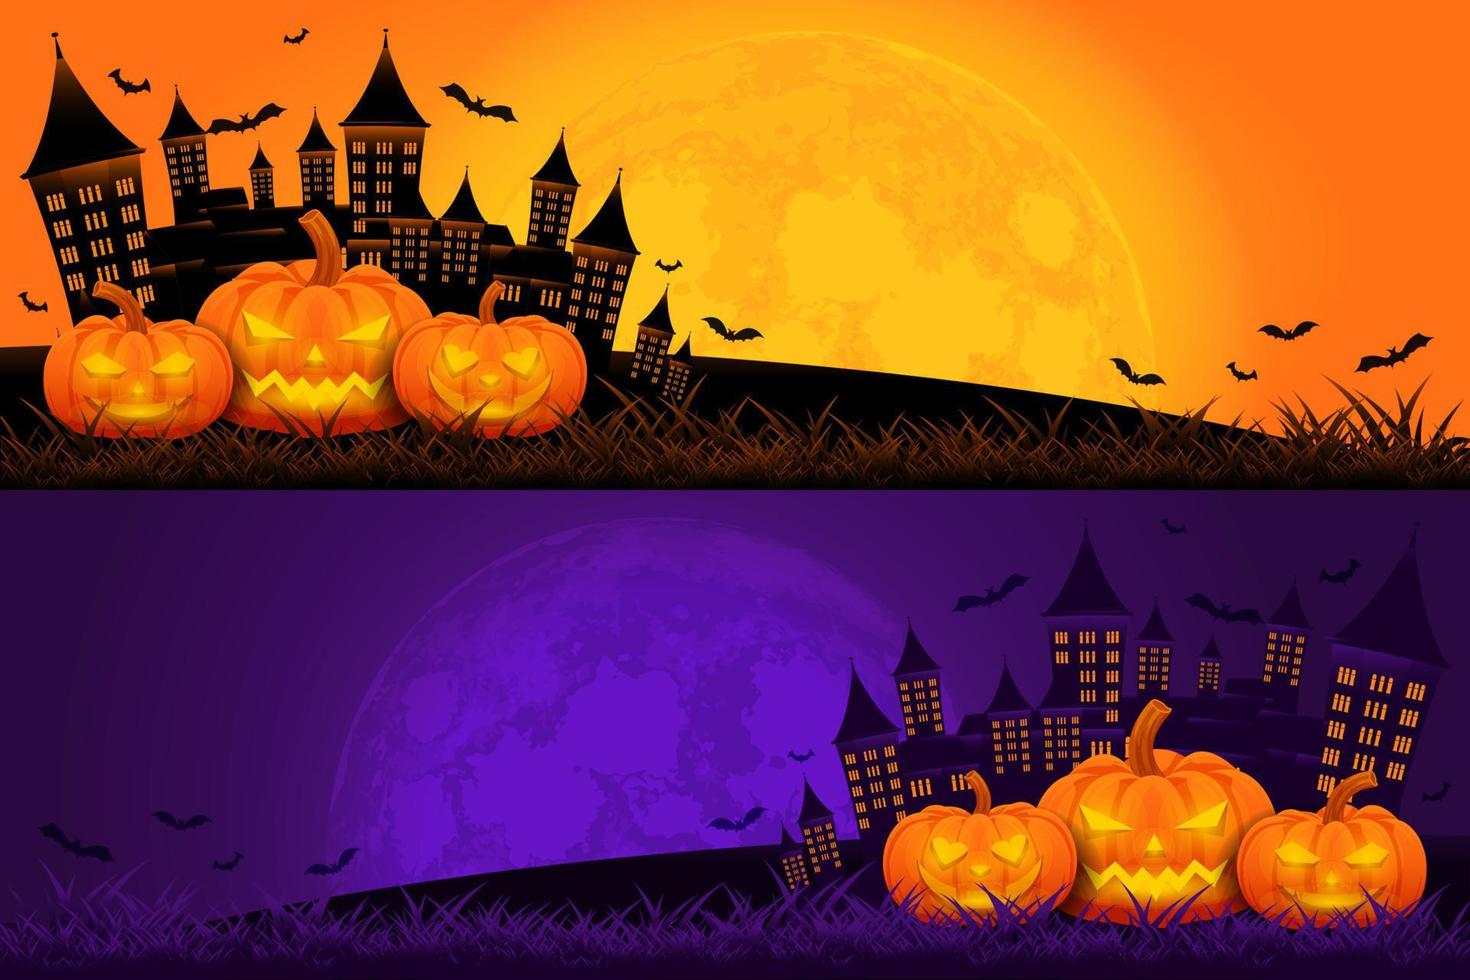 Halloween-Hintergrundvorlage mit Schloss, Kürbis und Mondvektor, Halloween-Hintergrund für Verkaufsförderung, Banner, Poster, soziale Medien, Feed, Einladung, Veranstaltung, Tapete in lila und orange Farbe vektor